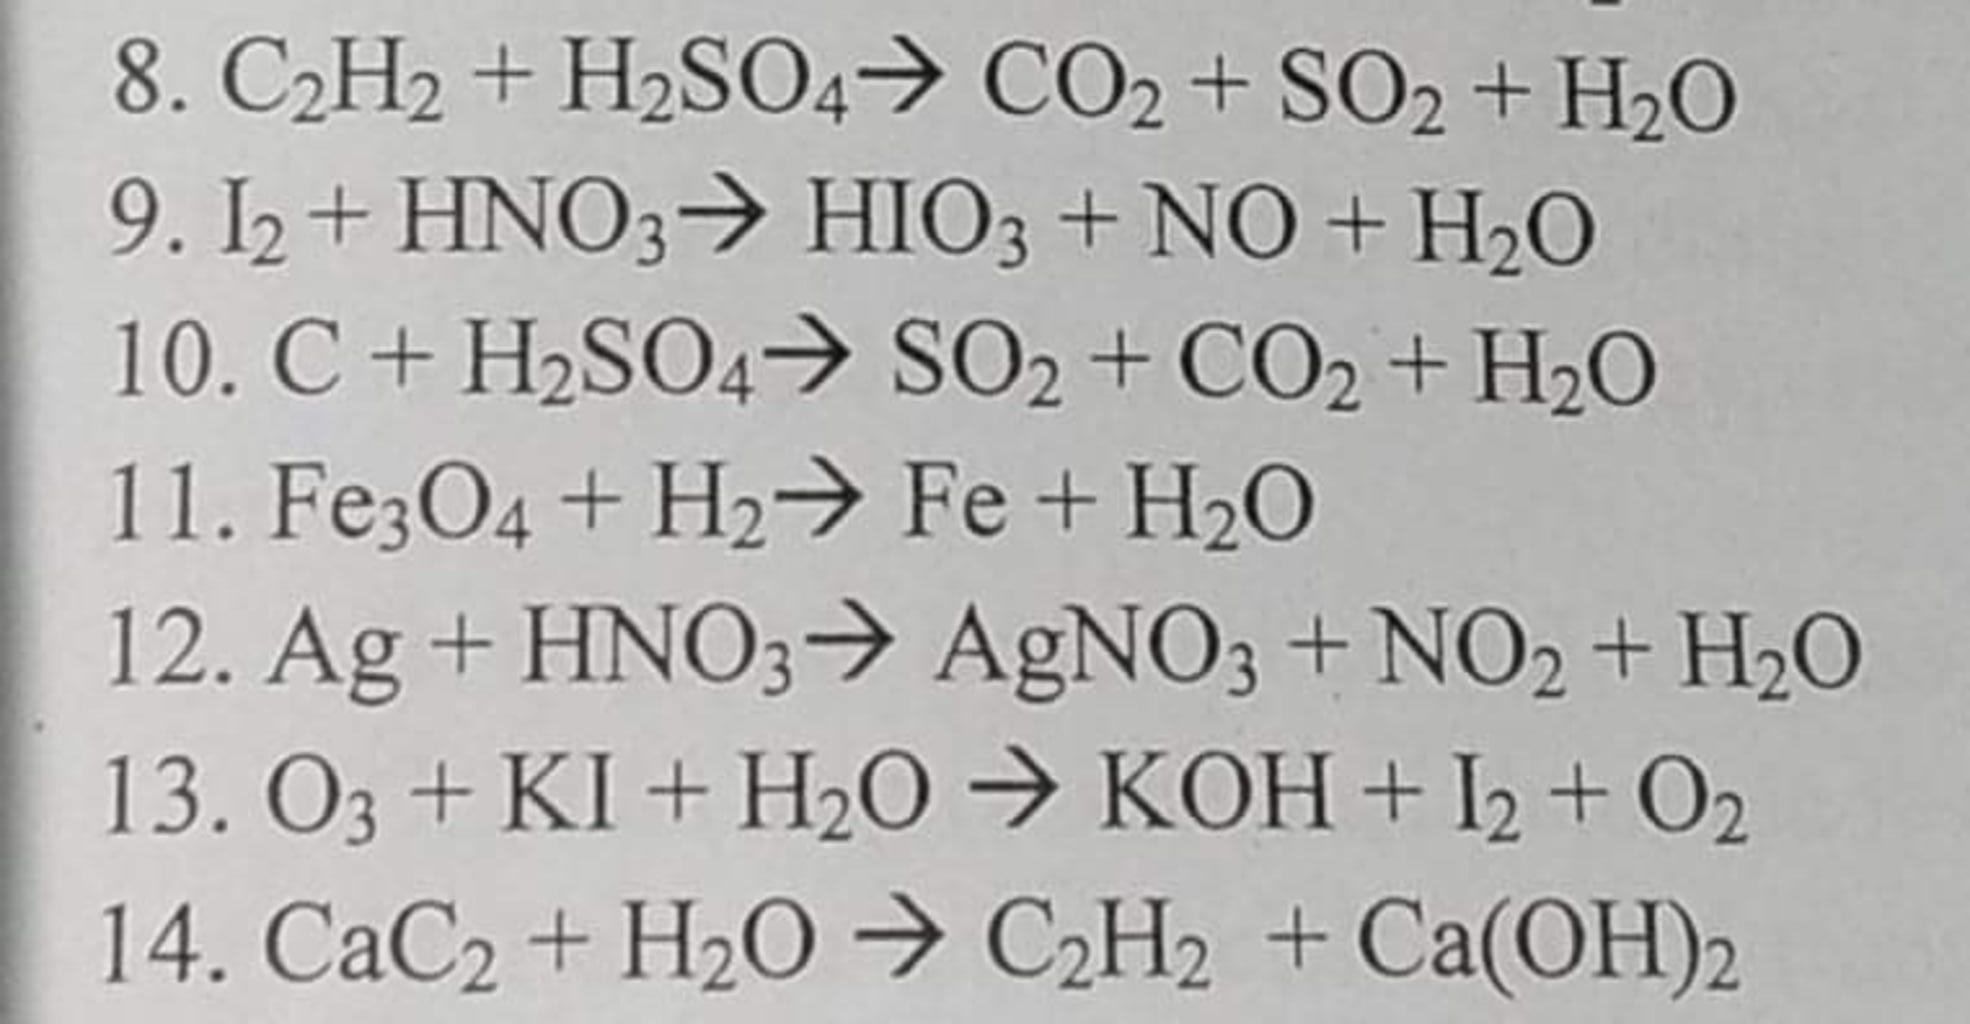 Có phản ứng nào xảy ra giữa C2H2 và H2SO4 không?